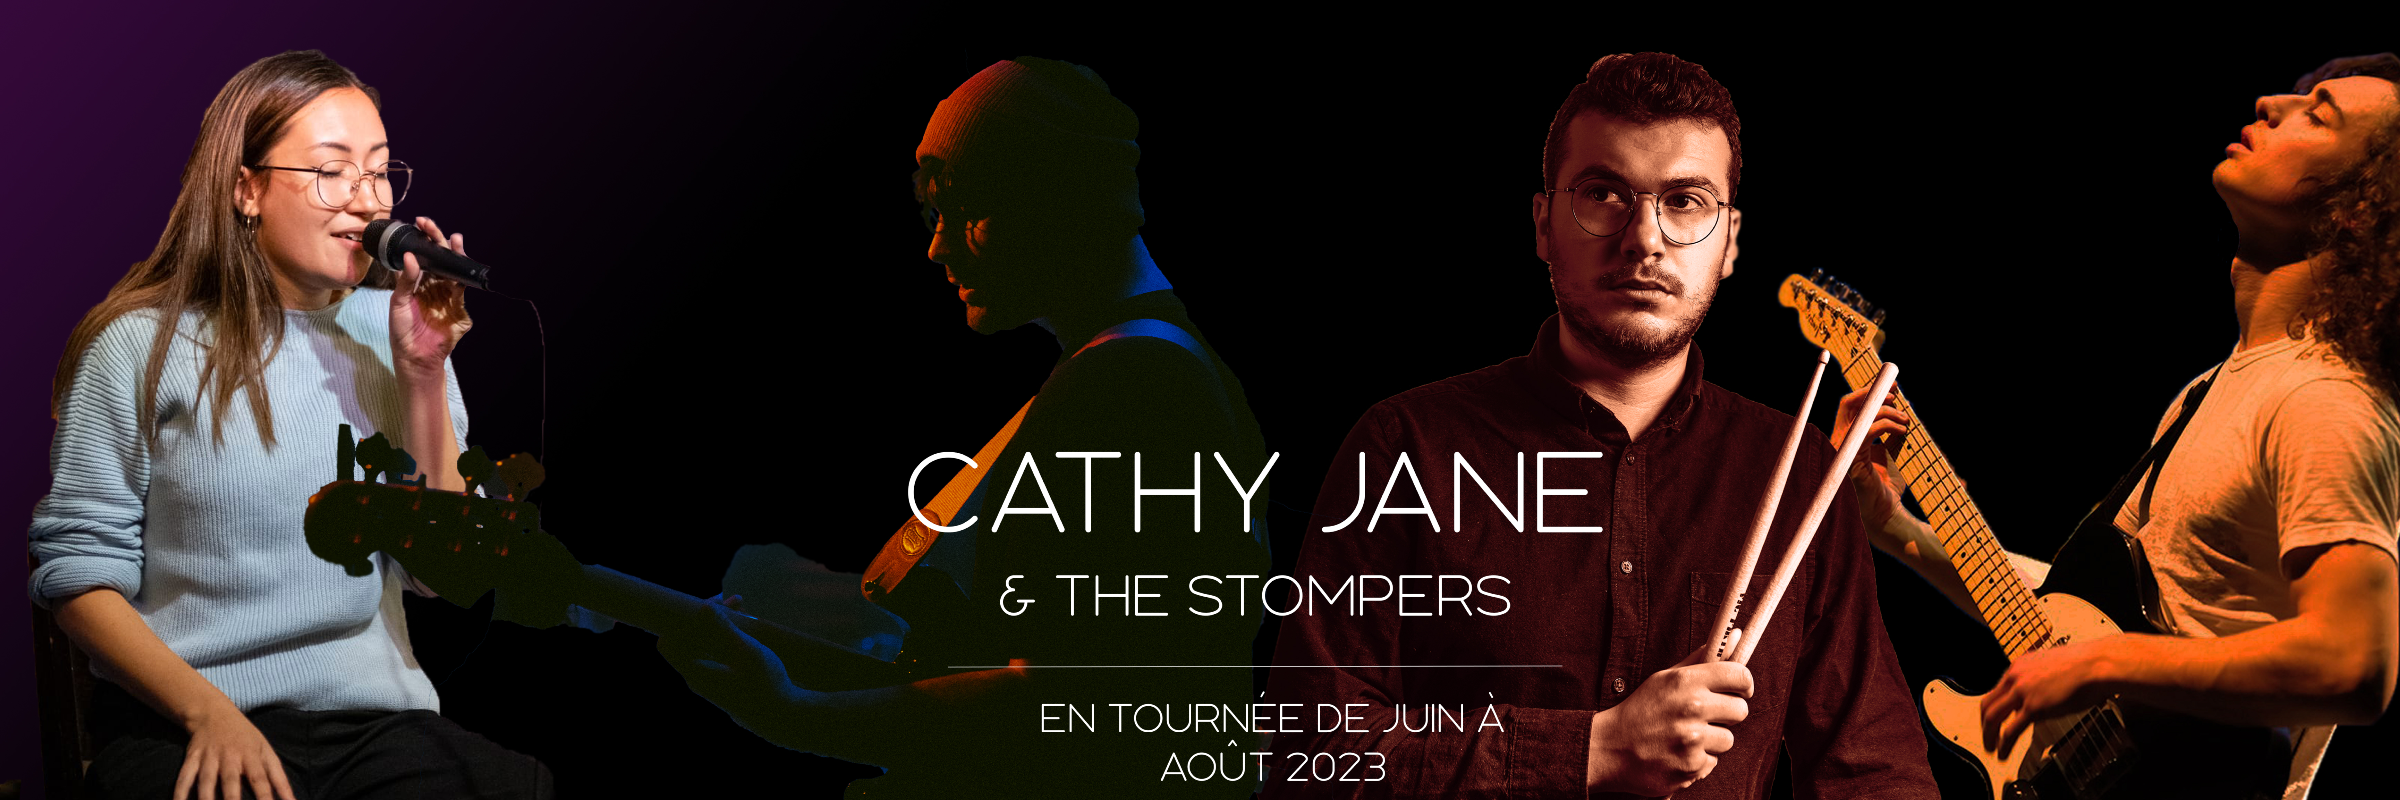 Cathy Jane & The Stompers, groupe de musique Pop en représentation à Paris - photo de couverture